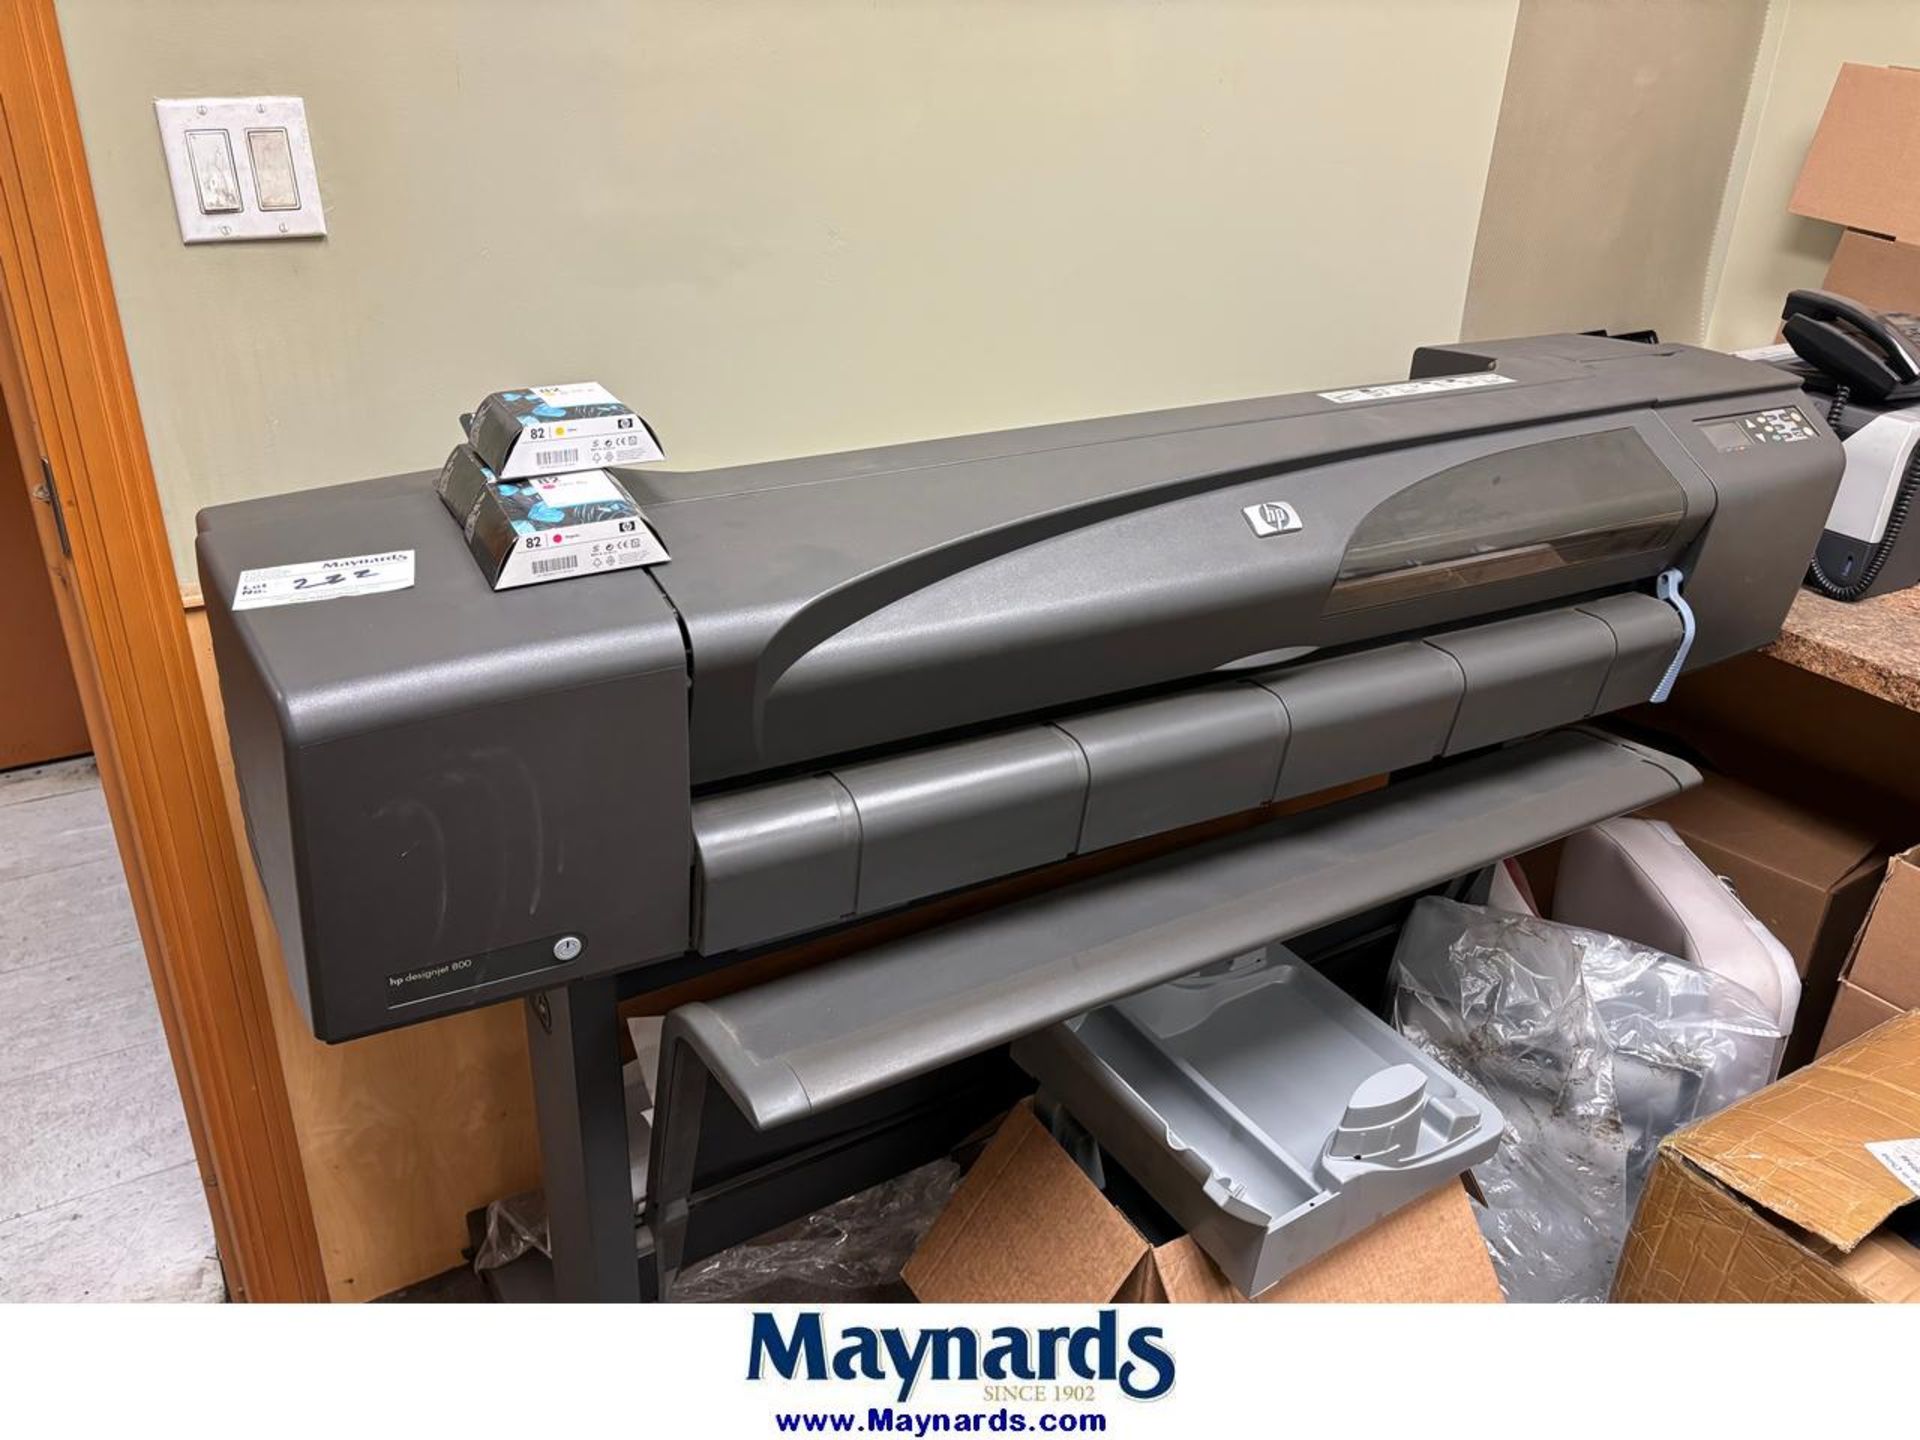 HP Designjet Pro 800 Large Format Printer